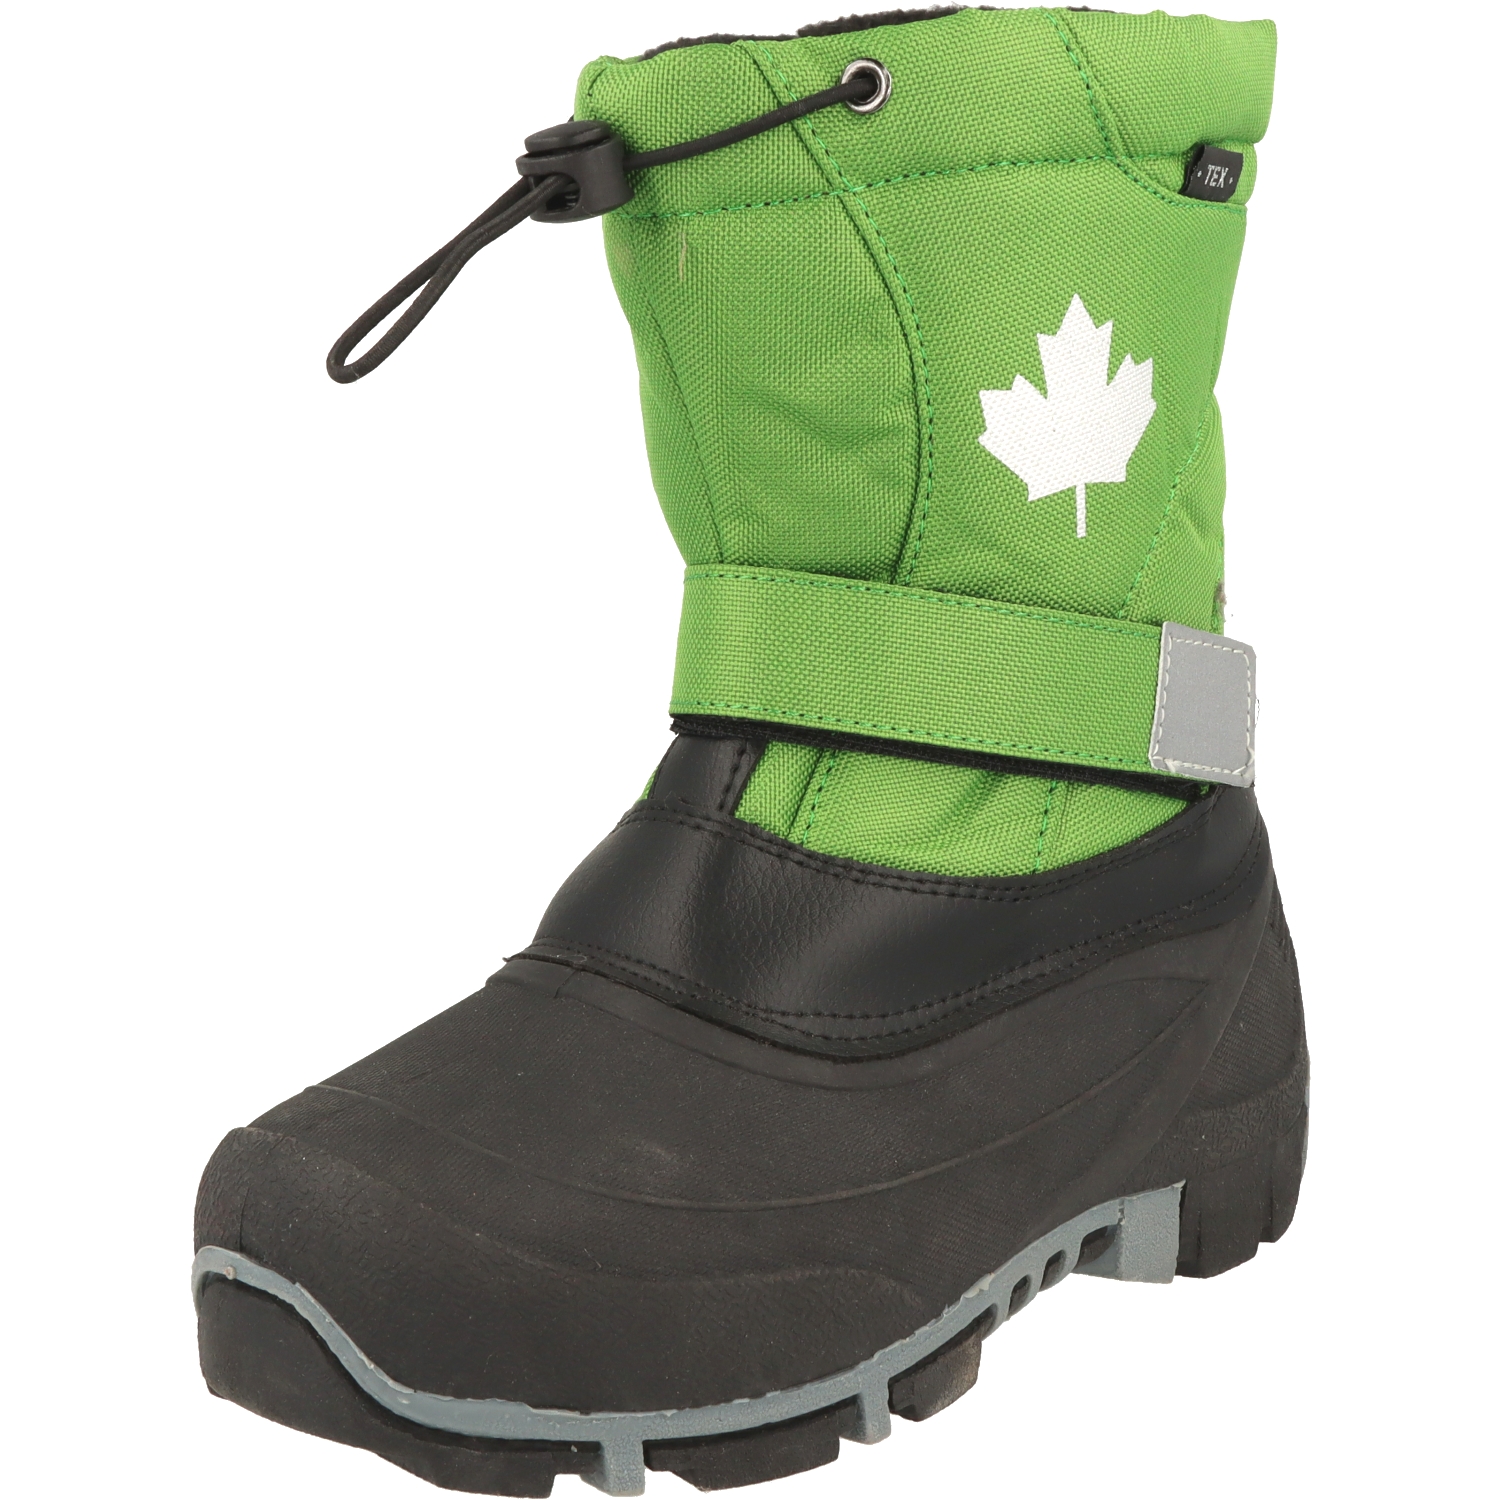 Indigo Canadians 467-185 Kinder Winter Stiefel Schnee Boots TEX Snowboots grün